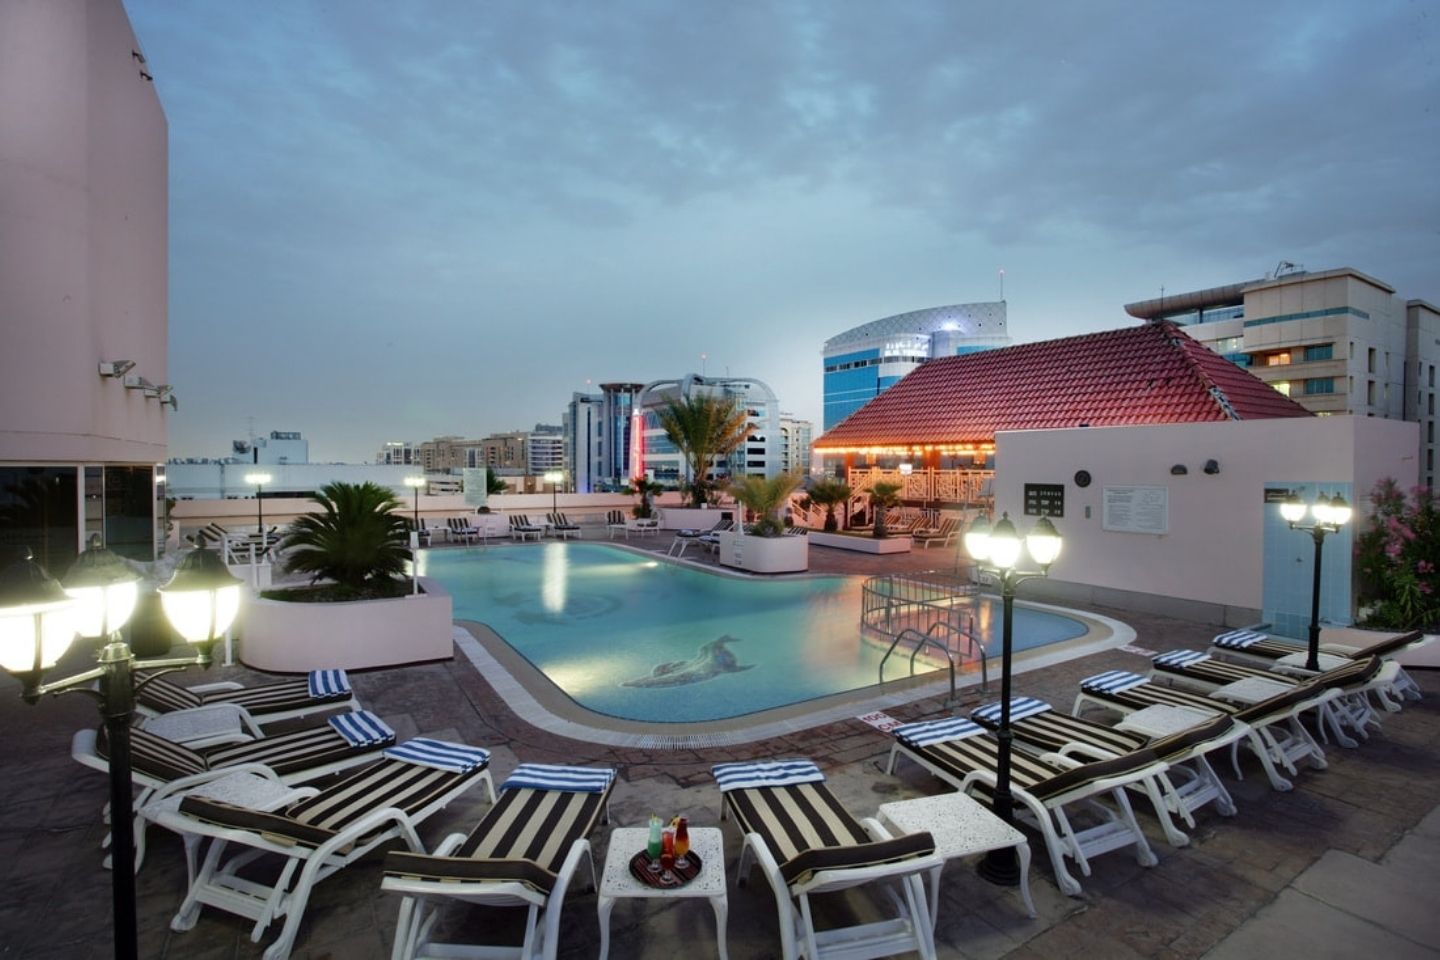 Hotels in Deira Dubai 